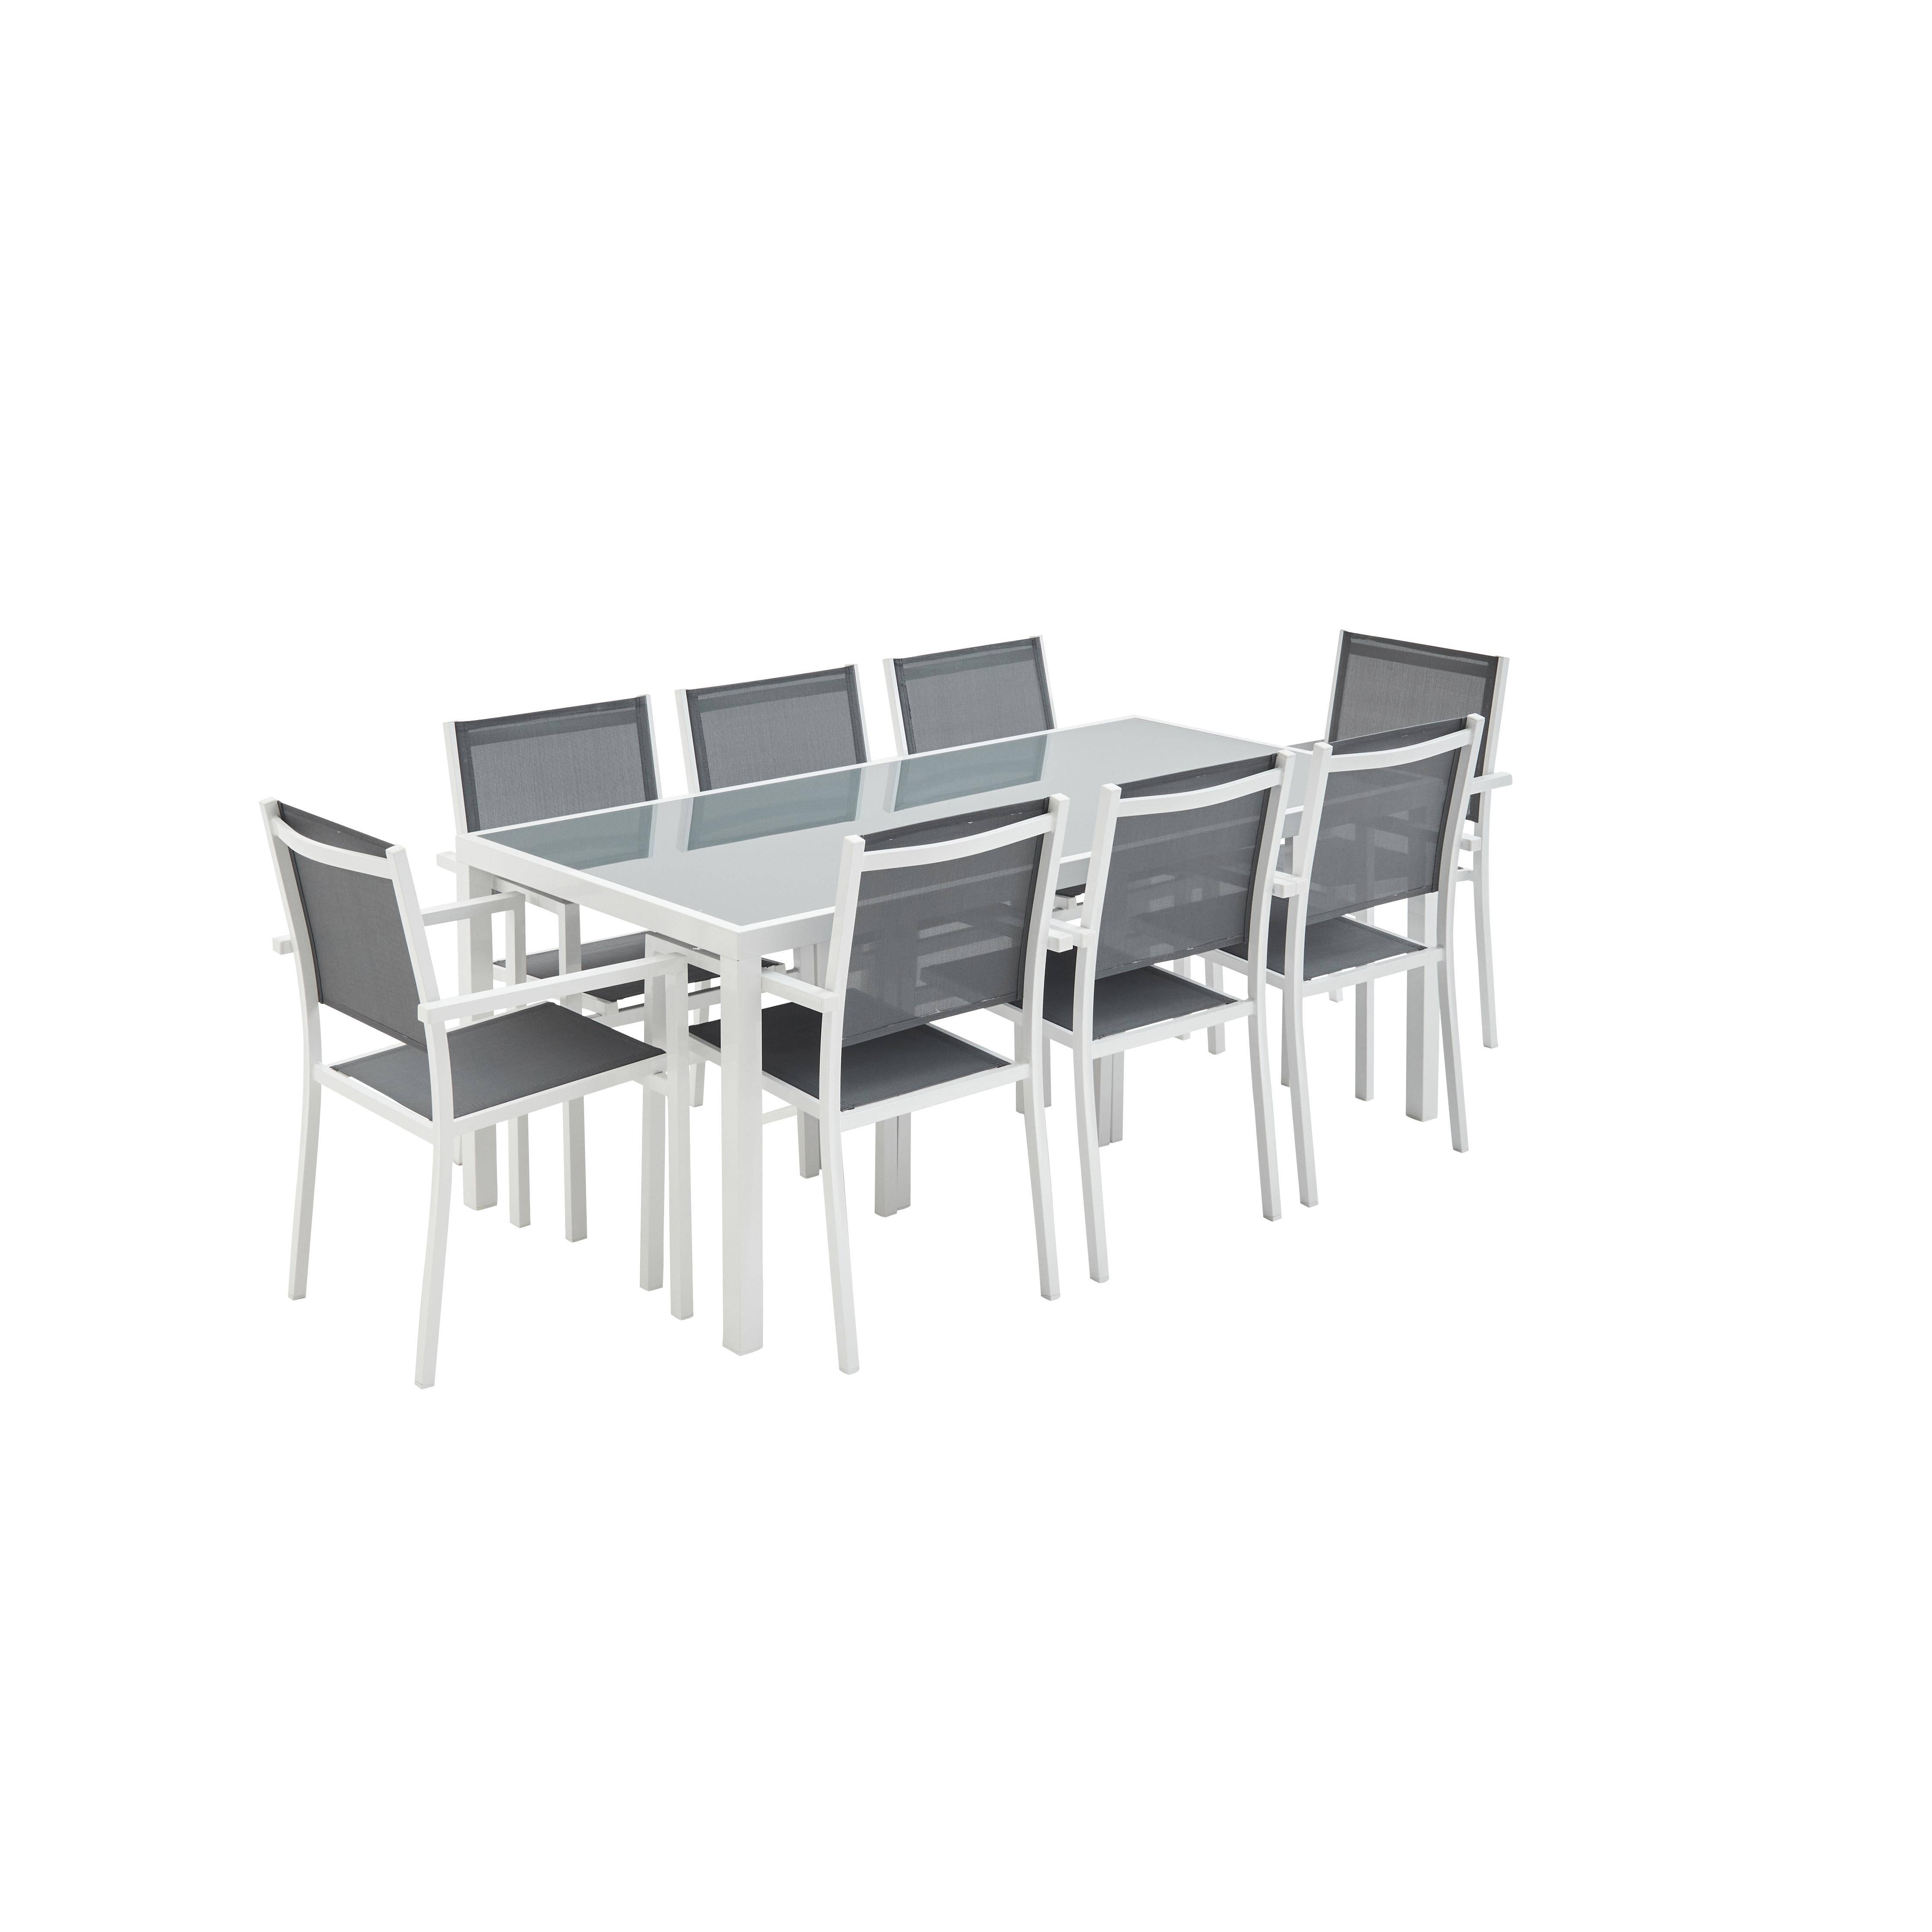 Set tavolo da giardino in alluminio e textilene - Capua 180cm - Bianco, Grigio - 8 posti - 1 grande tavolo rettangolare, 8 poltrone impilabili Photo2